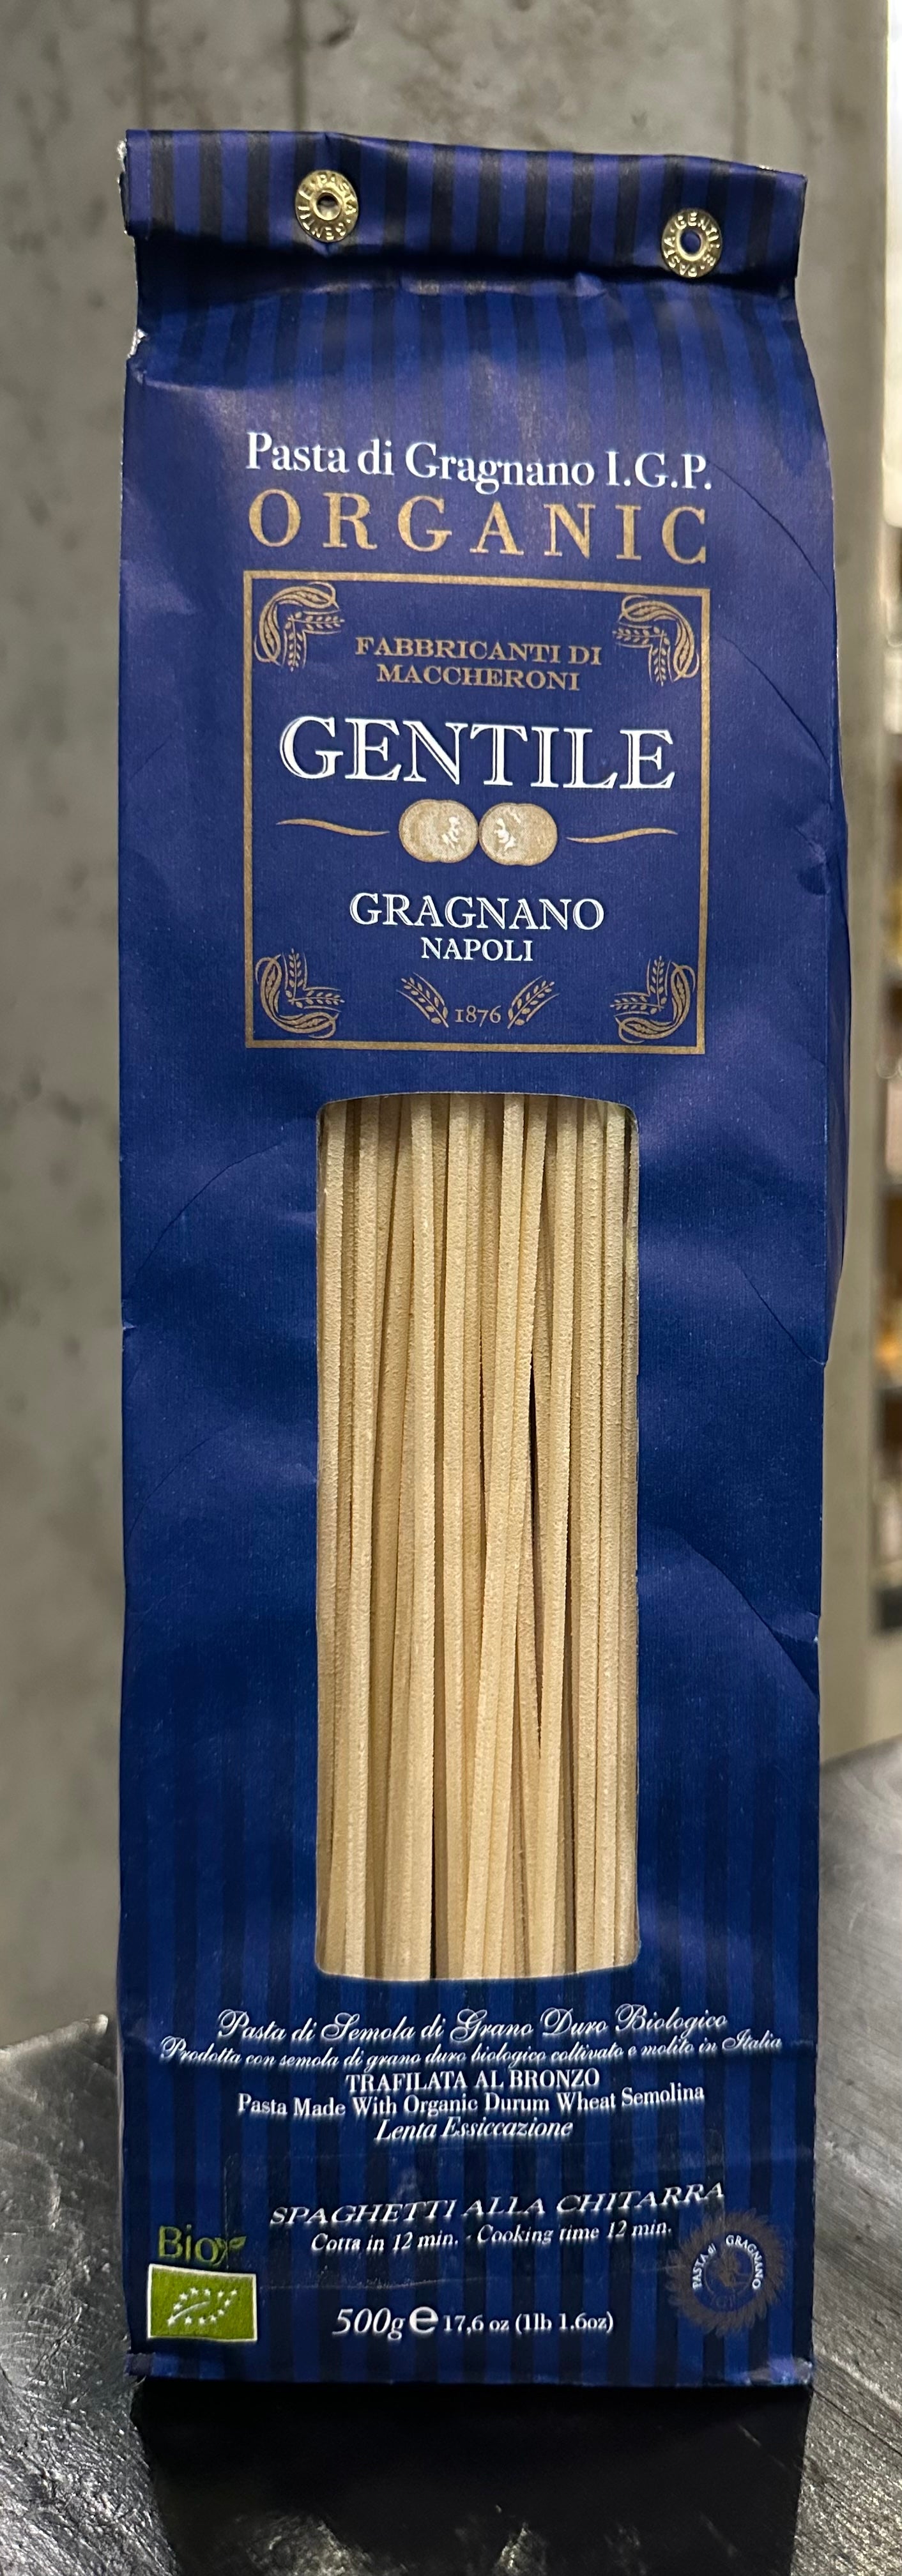 Spaghetti alla Chitarra Delivery